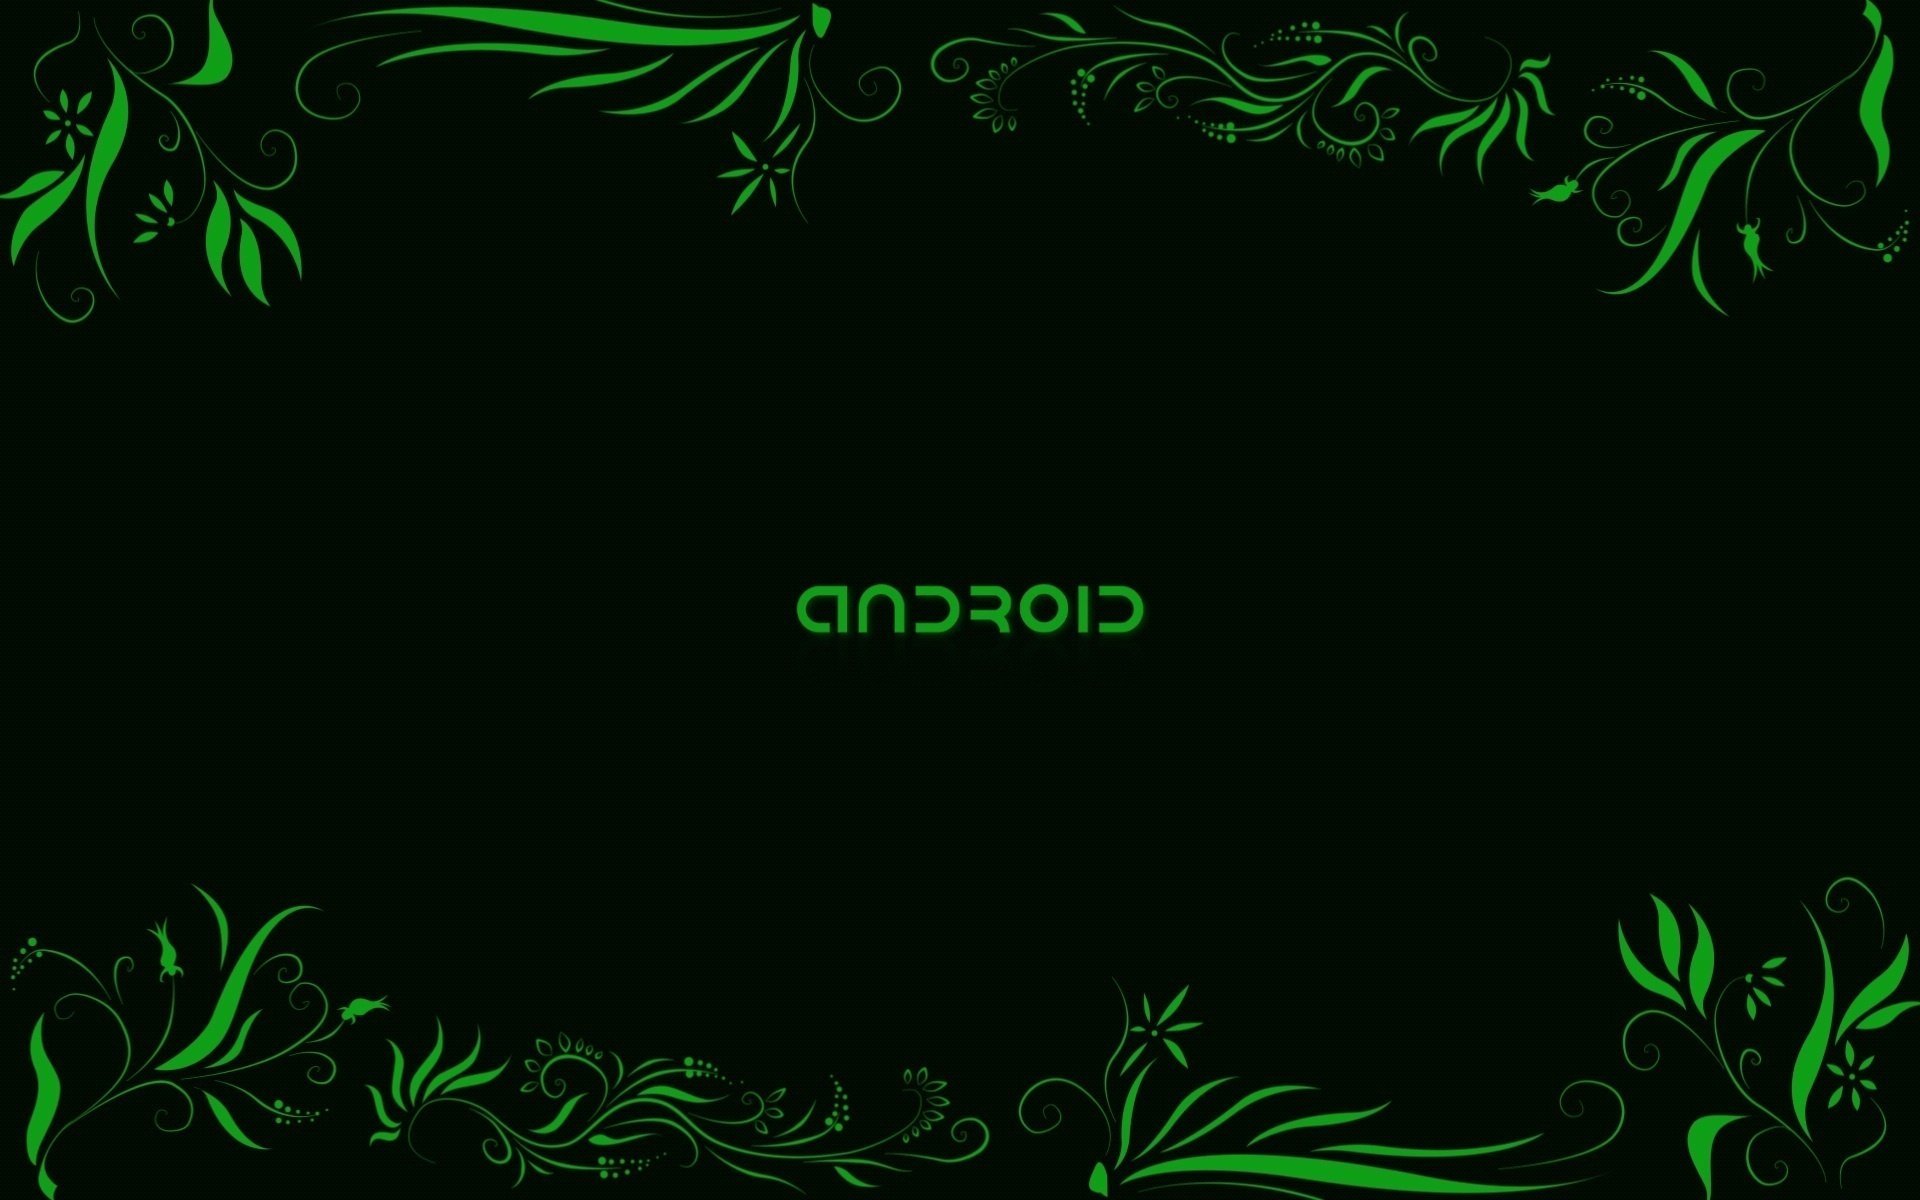 Надпись андроид на чёрном фоне с зелёными узорами